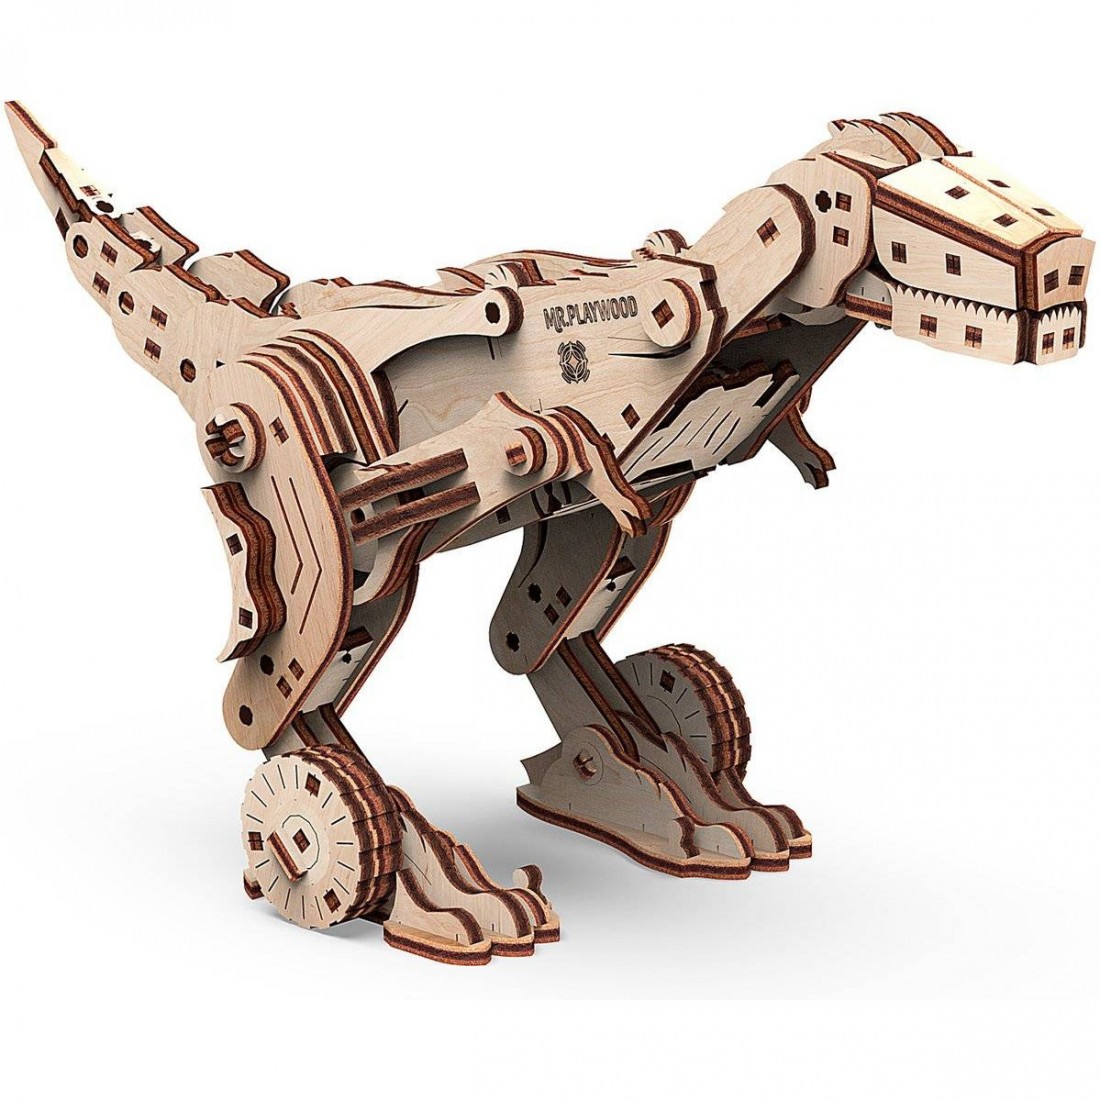 Maquette 3d en bois d'un robot mécanique